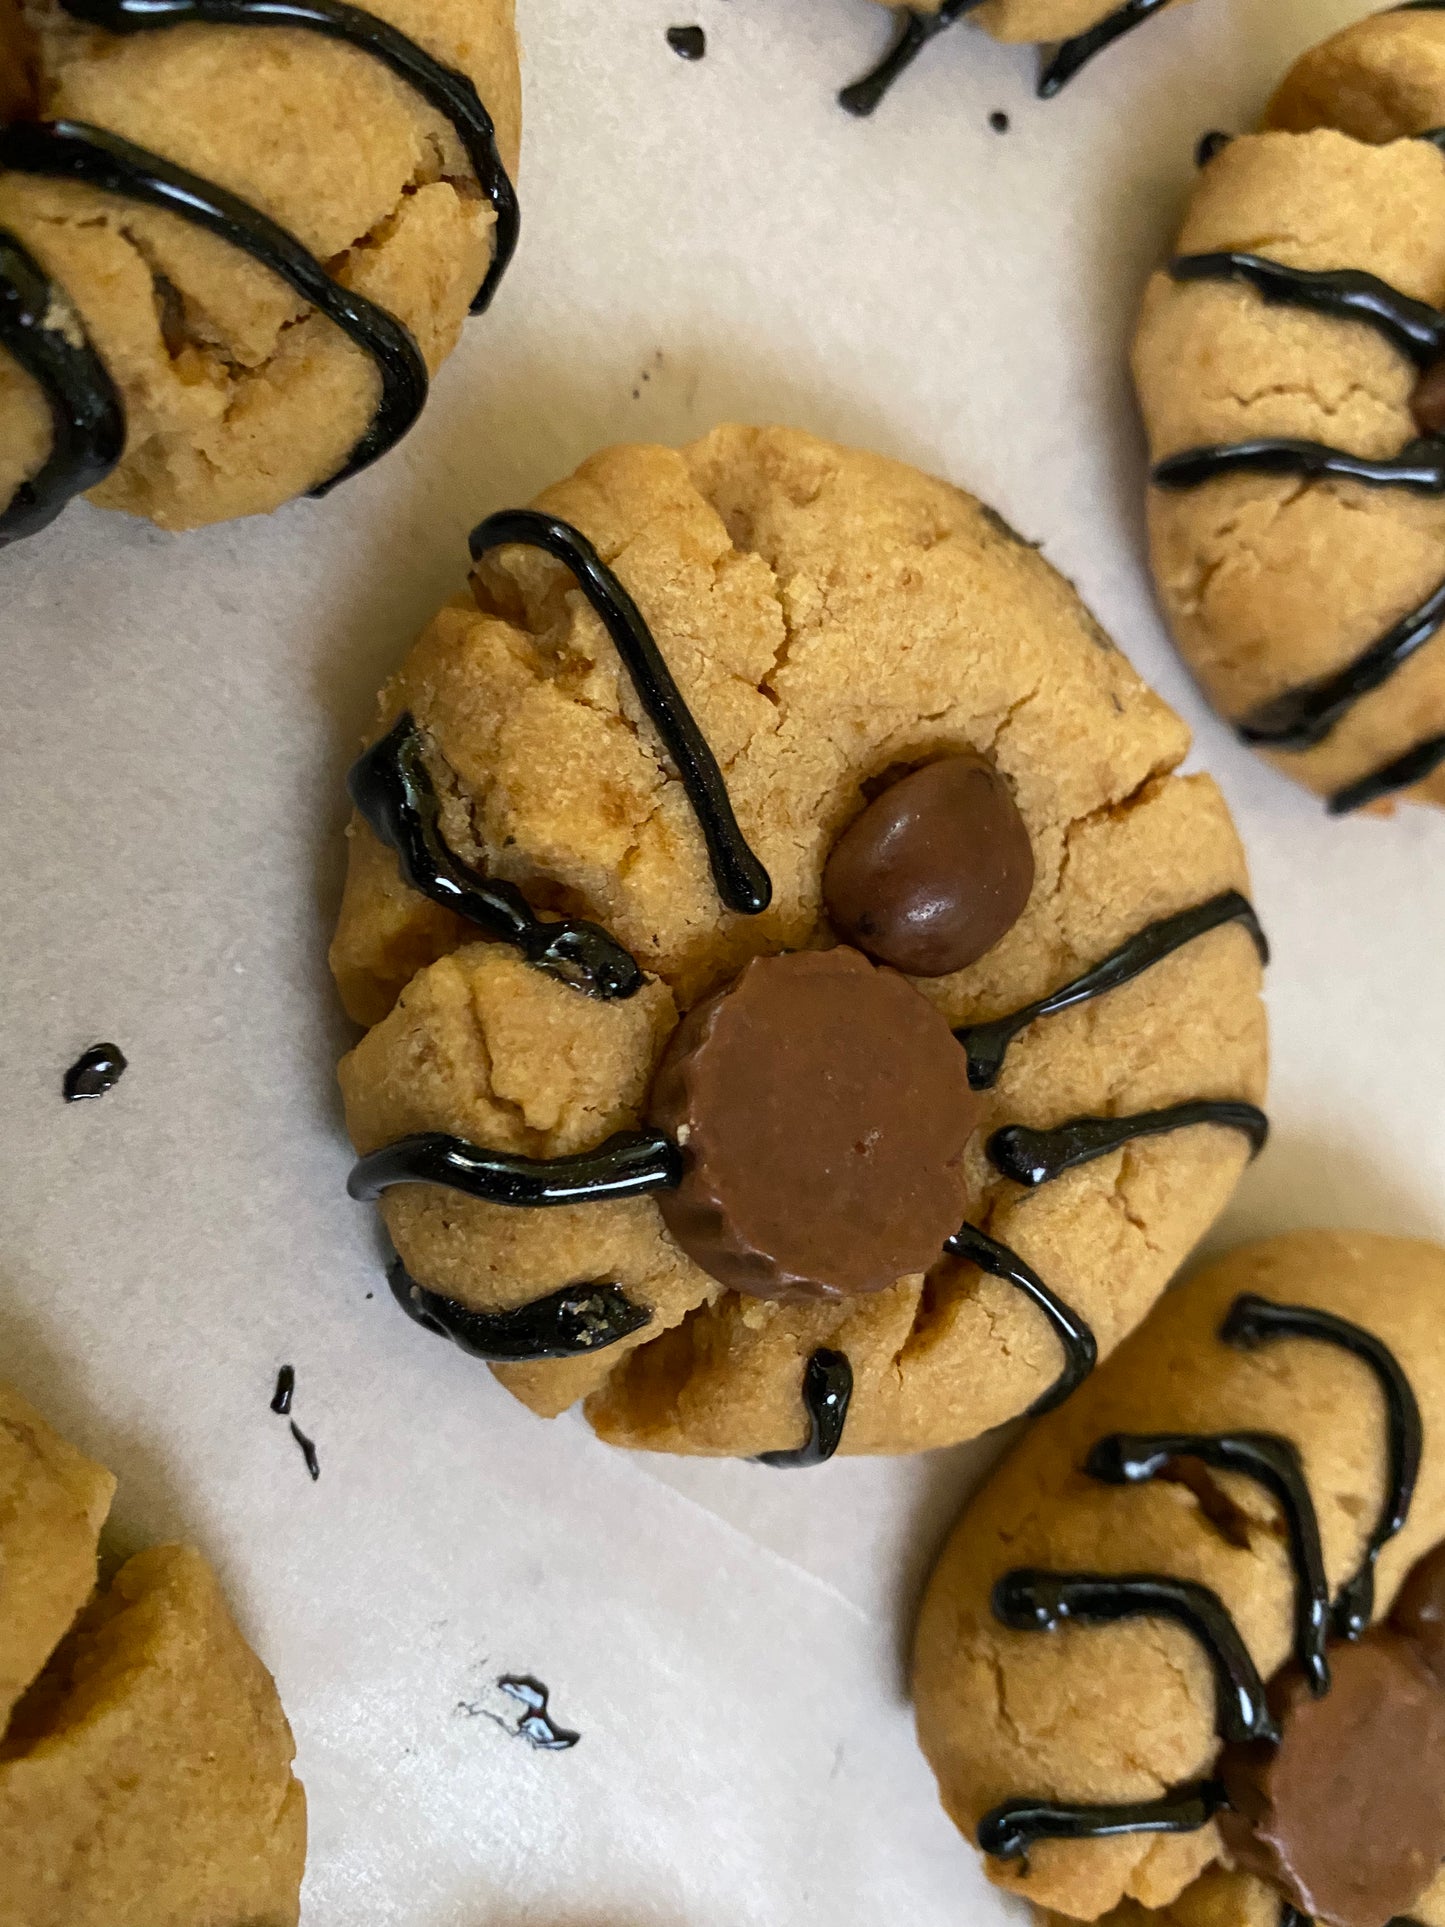 Spider cookies